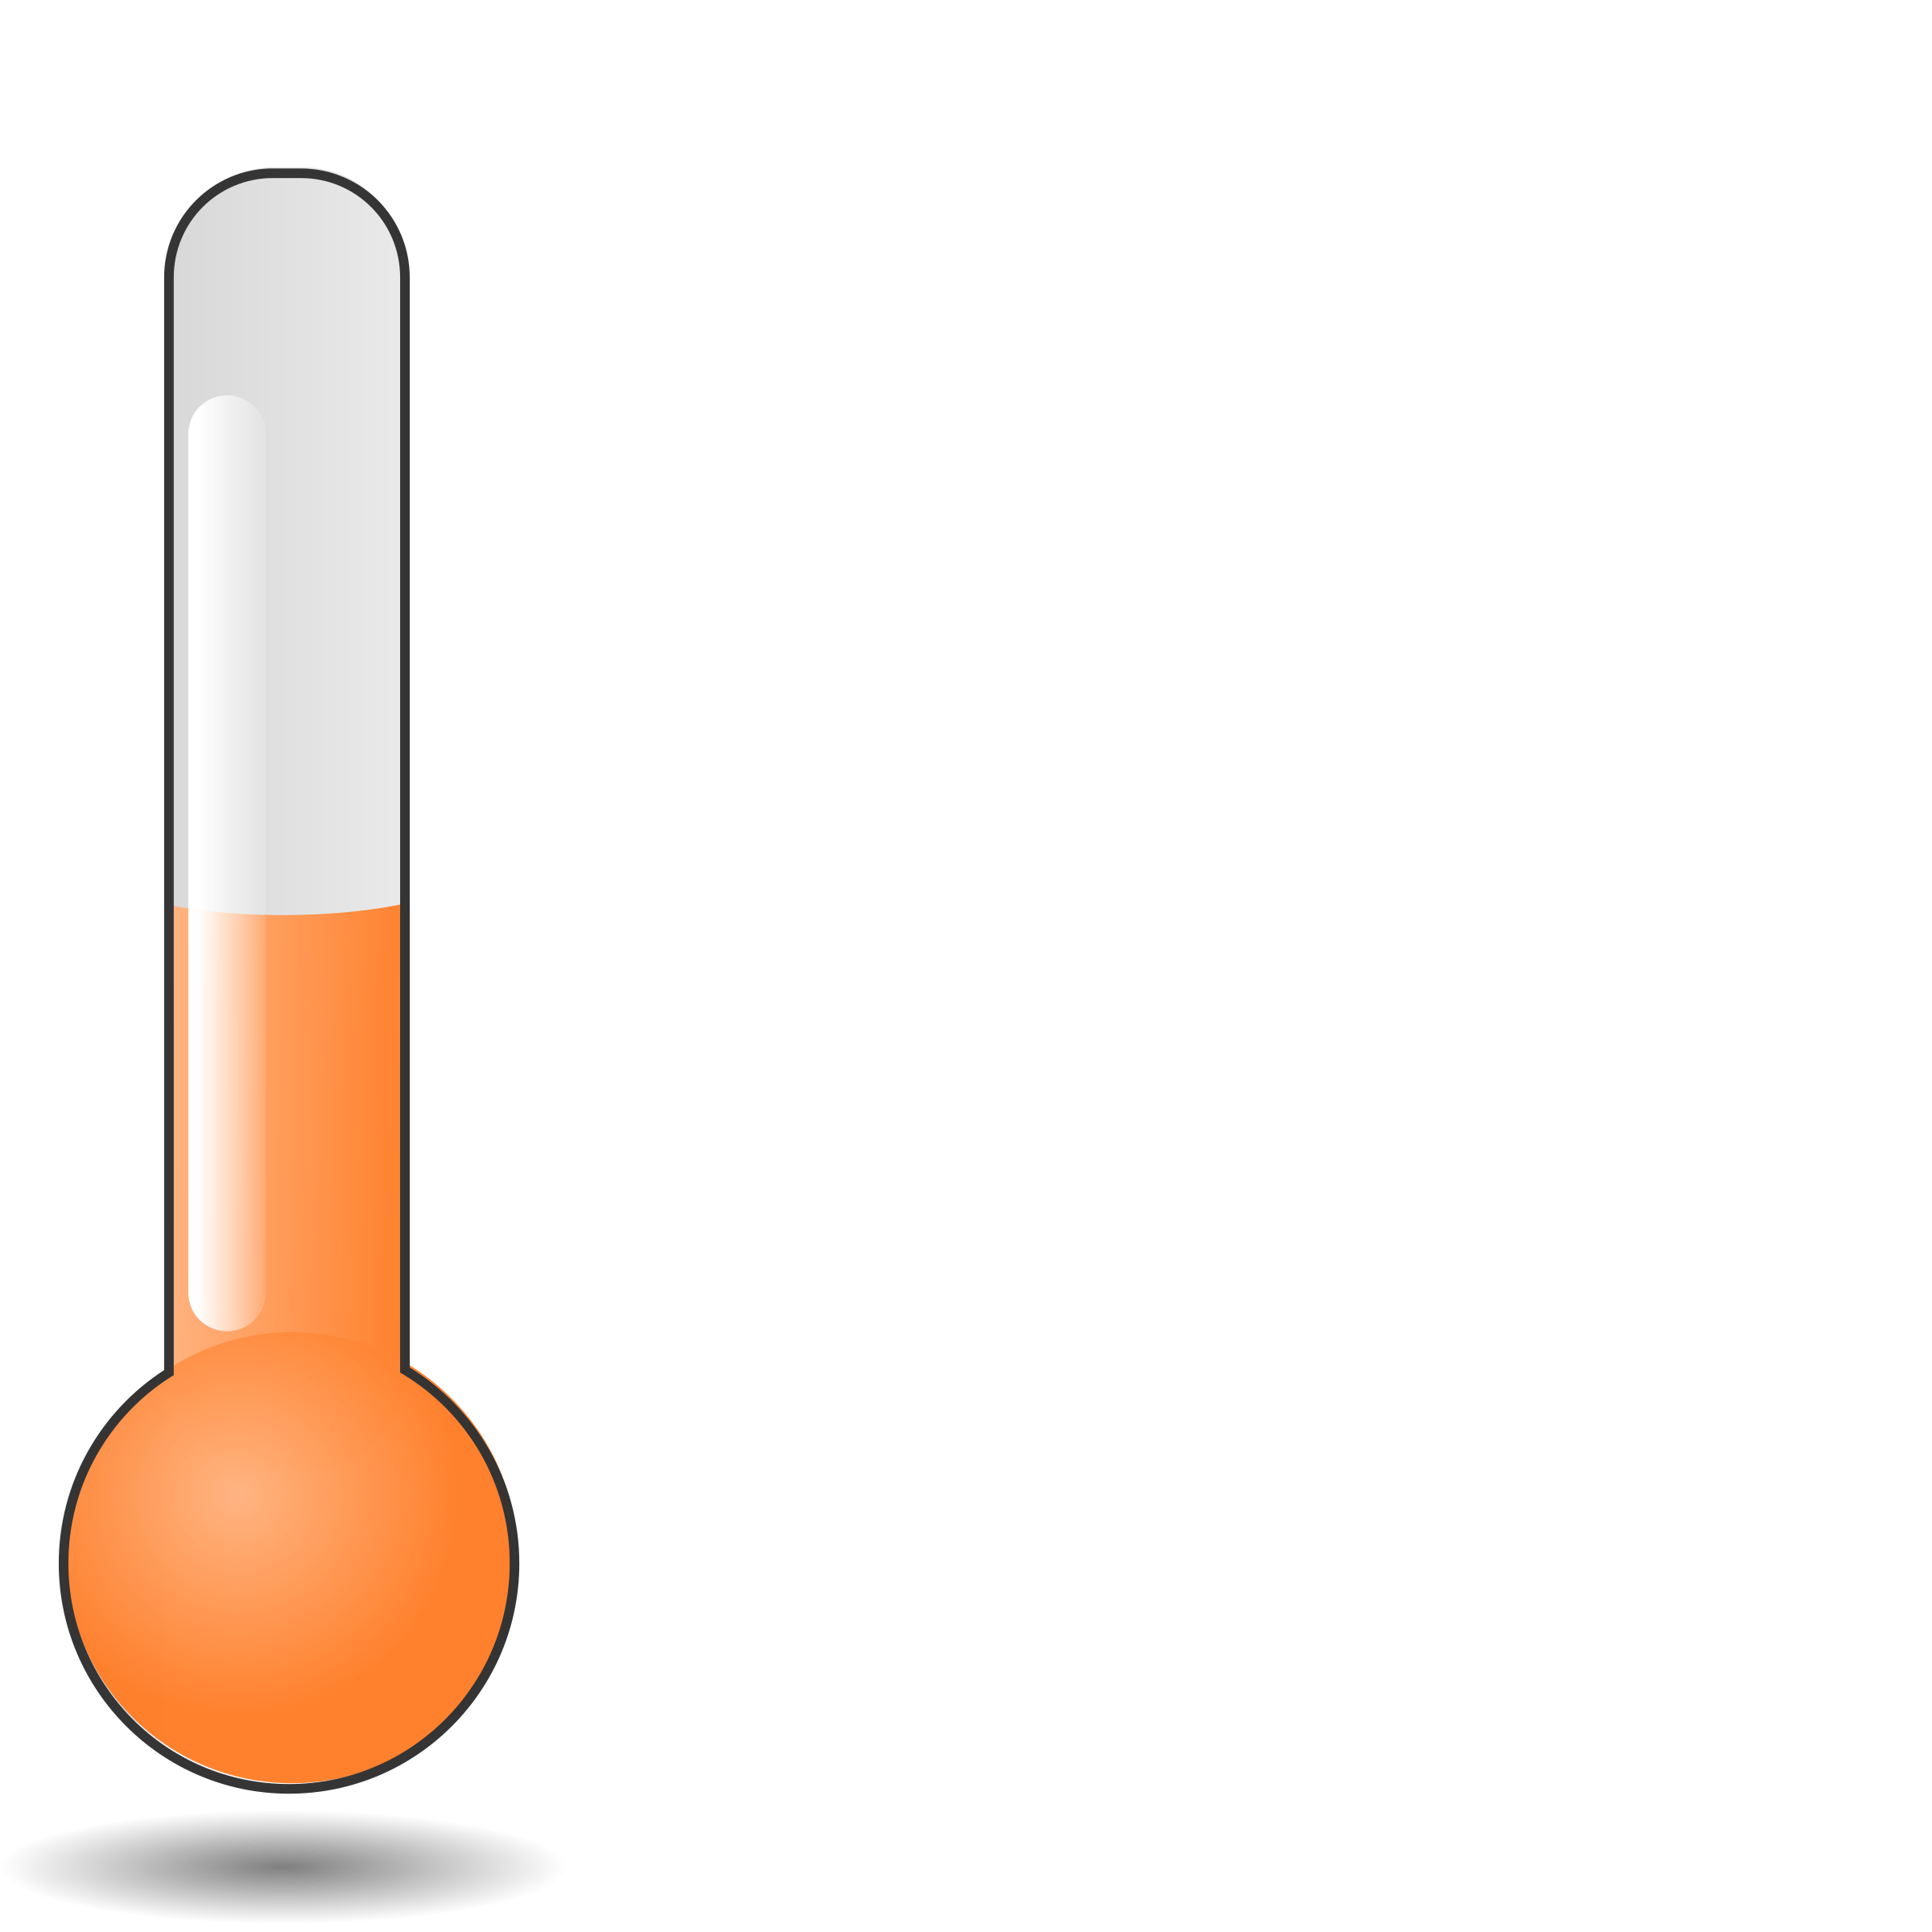 Warm Temperature Clip Art